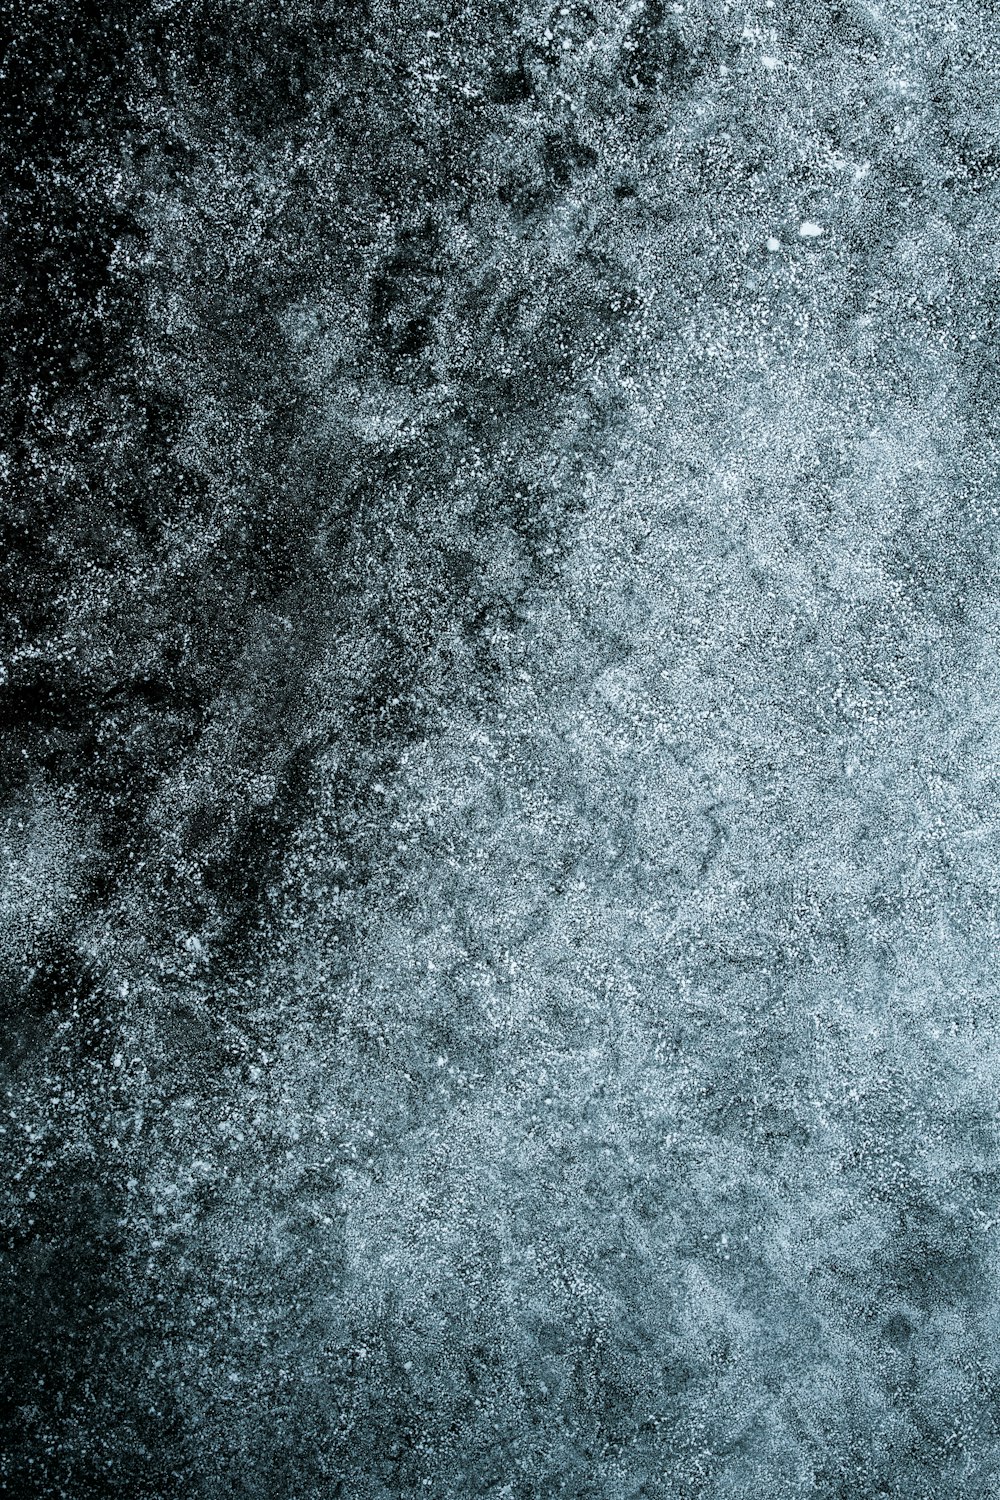 地上の雪の白黒写真